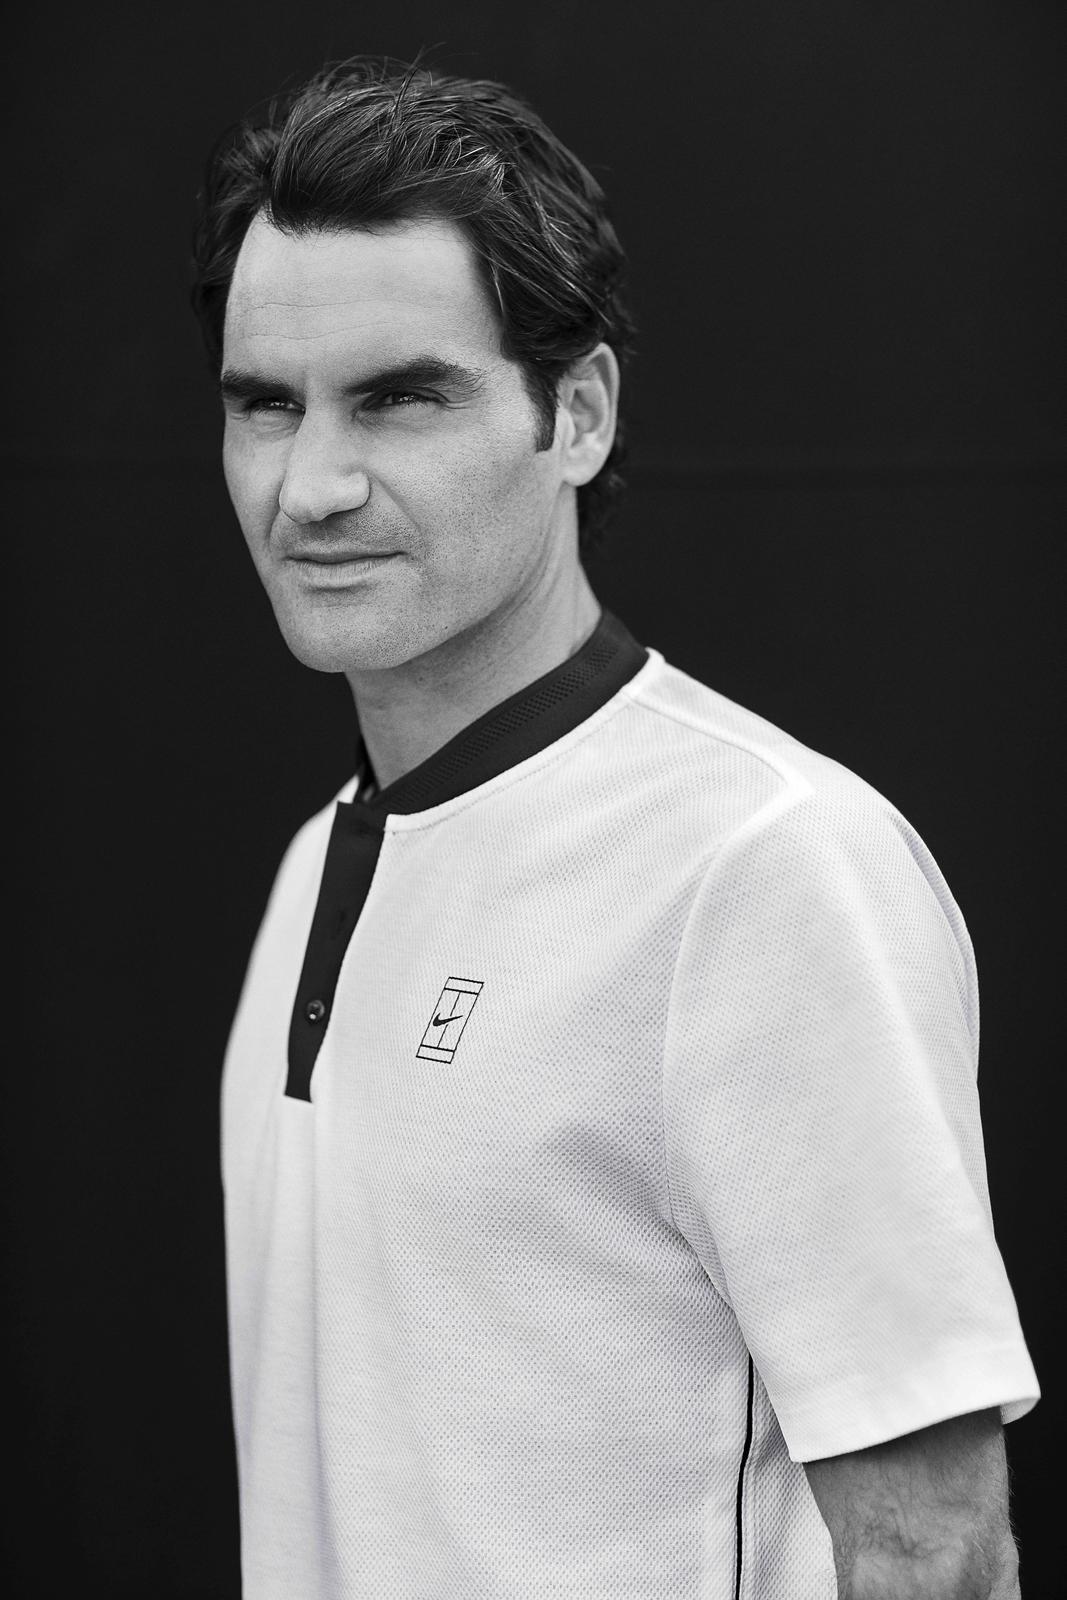 Roger_Federer_NikeCourt_3_copy_native_1600.jpg